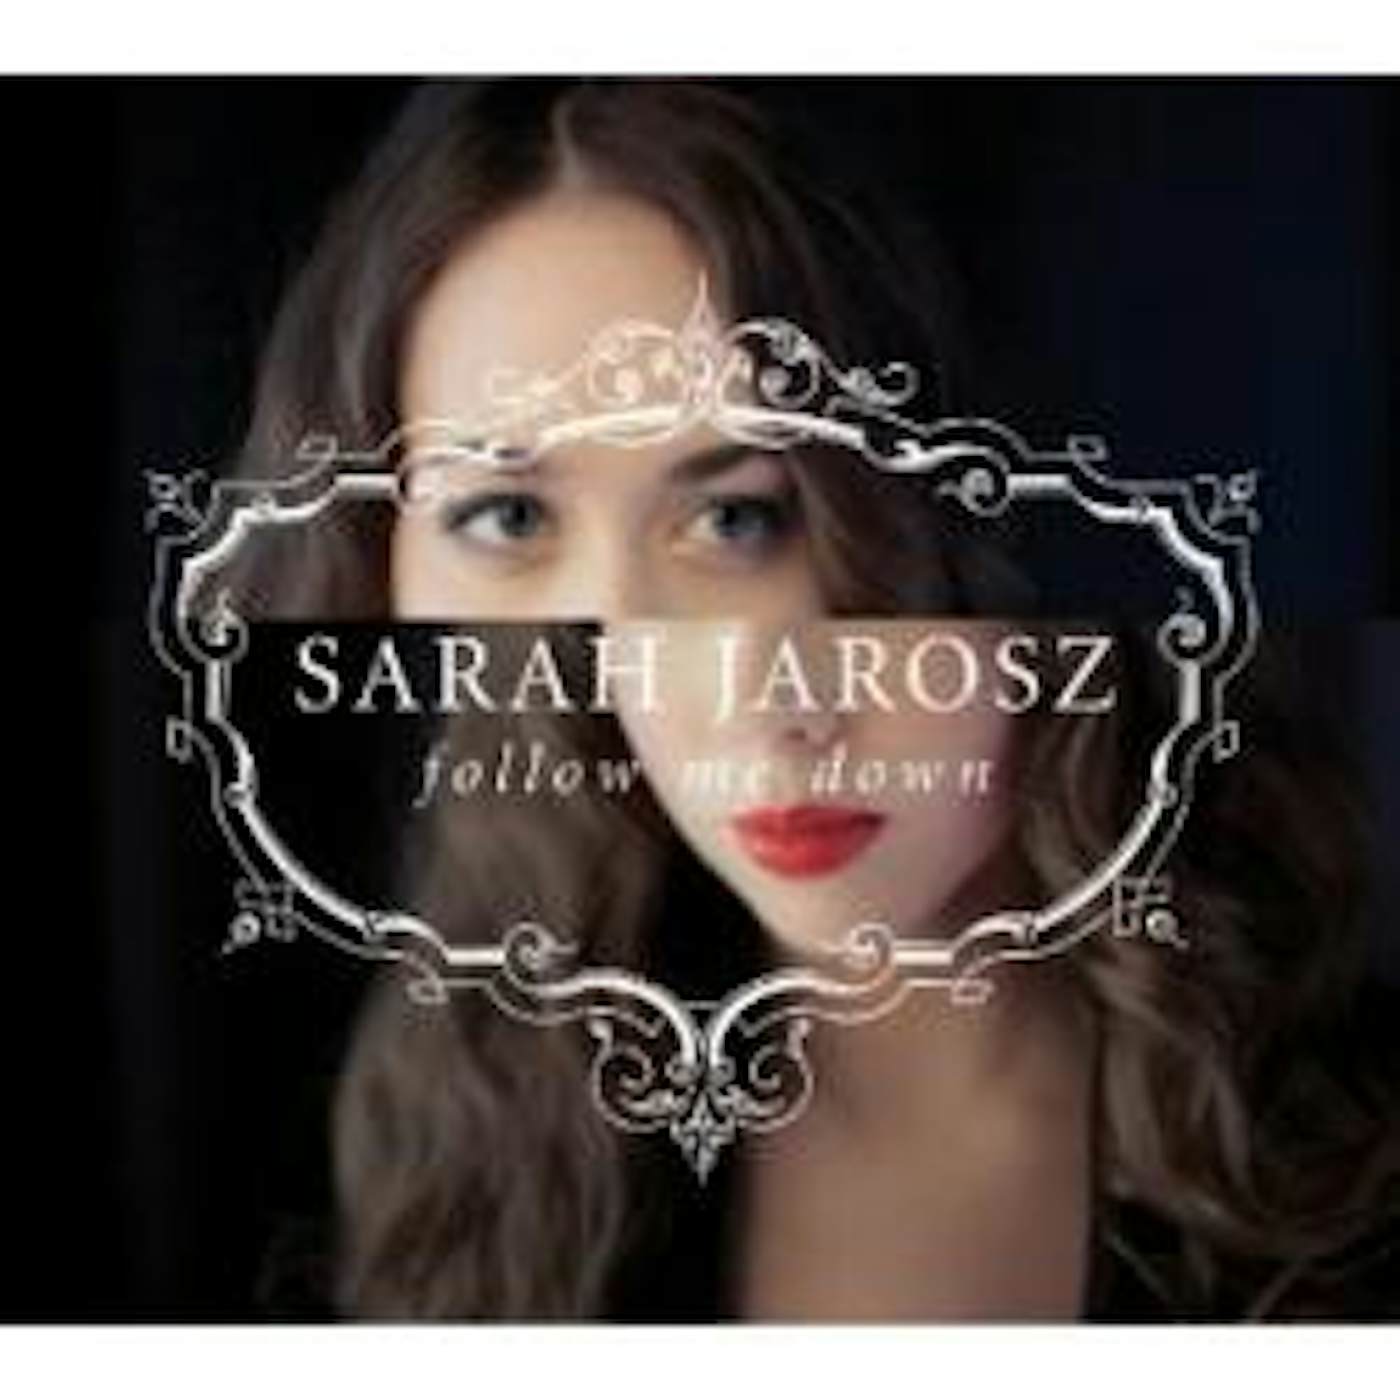 Sarah Jarosz FOLLOW ME DOWN CD